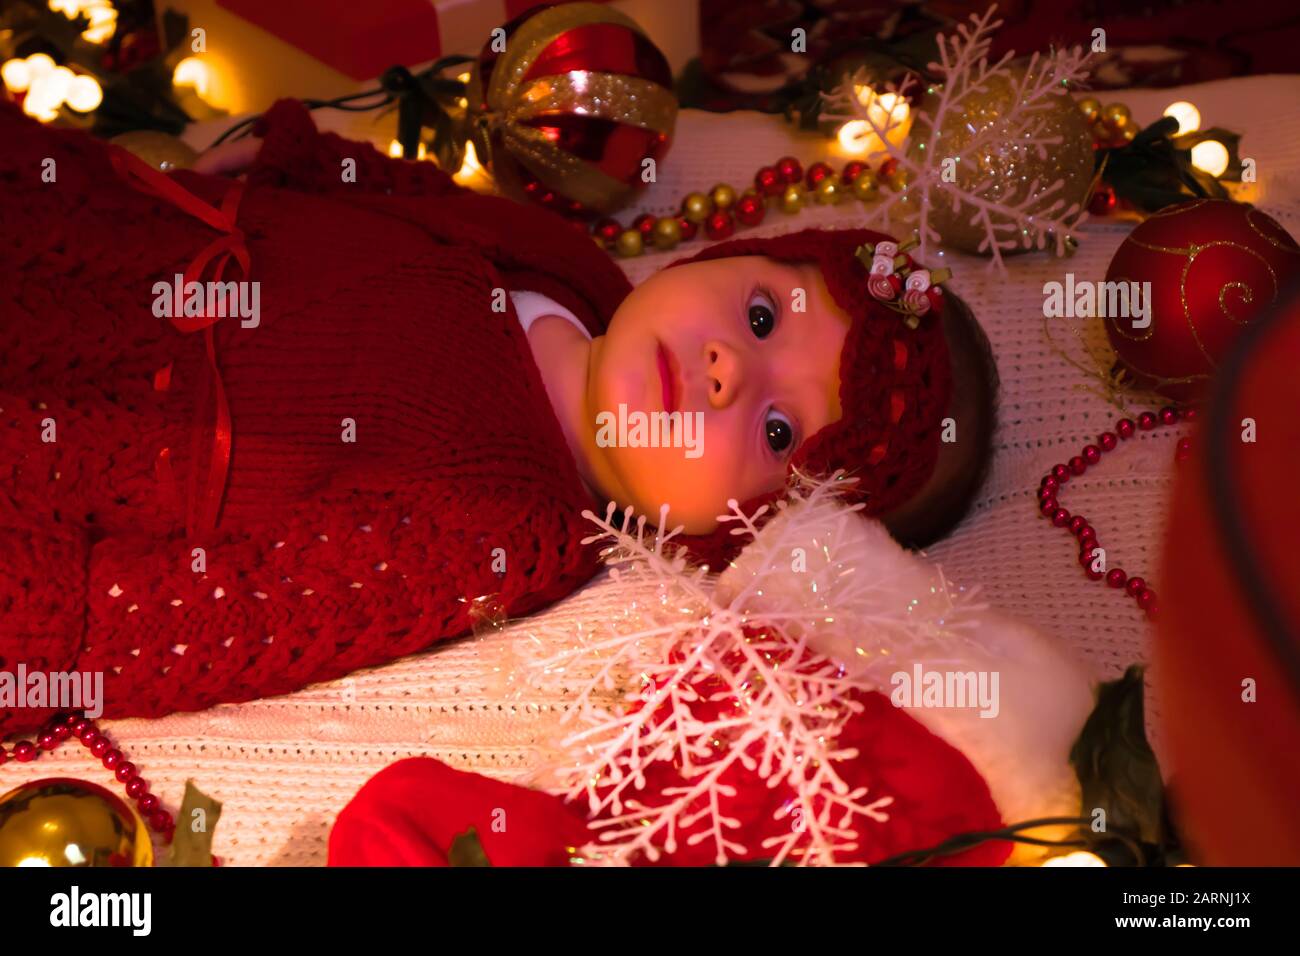 Ein süßes Mädchen in einem roten Outfit auf einer weißen Decke am Heiligabend. Stockfoto